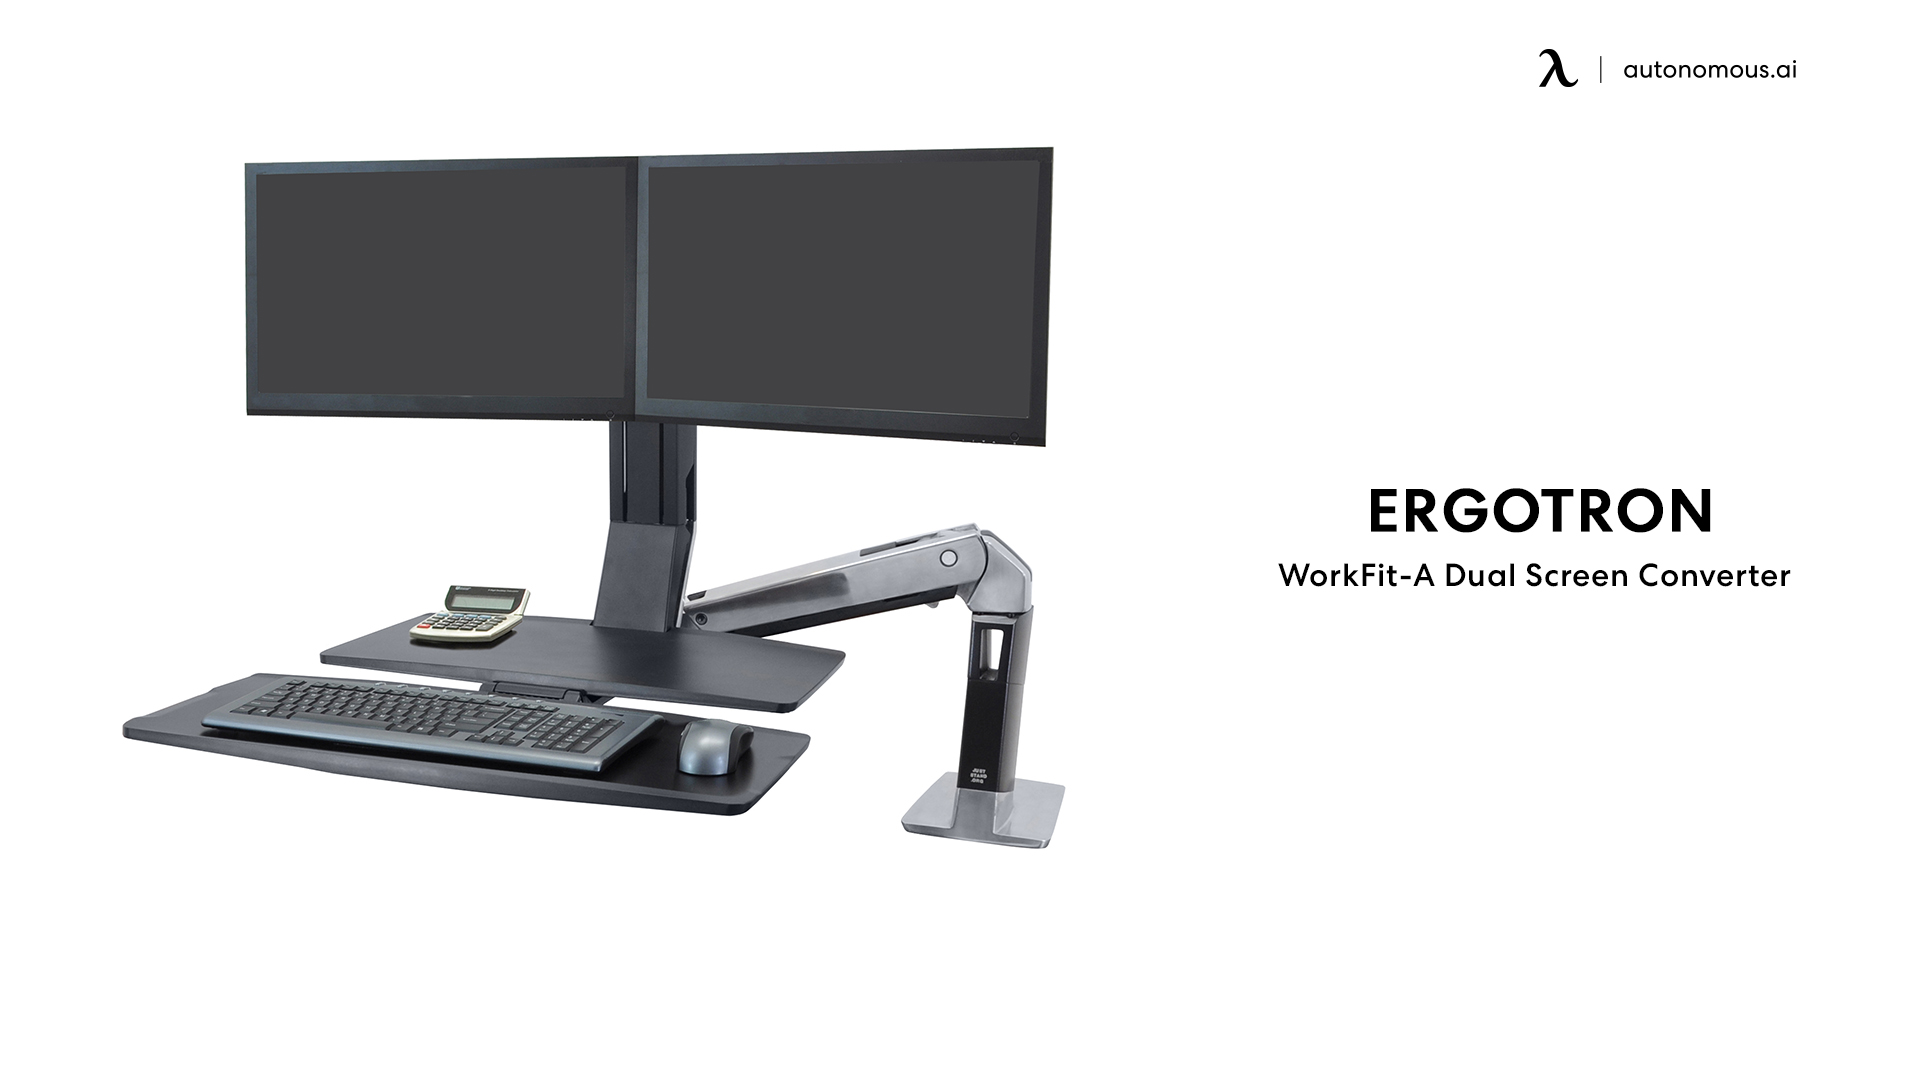 Ergotron WorkFit-A Dual Screen Converter